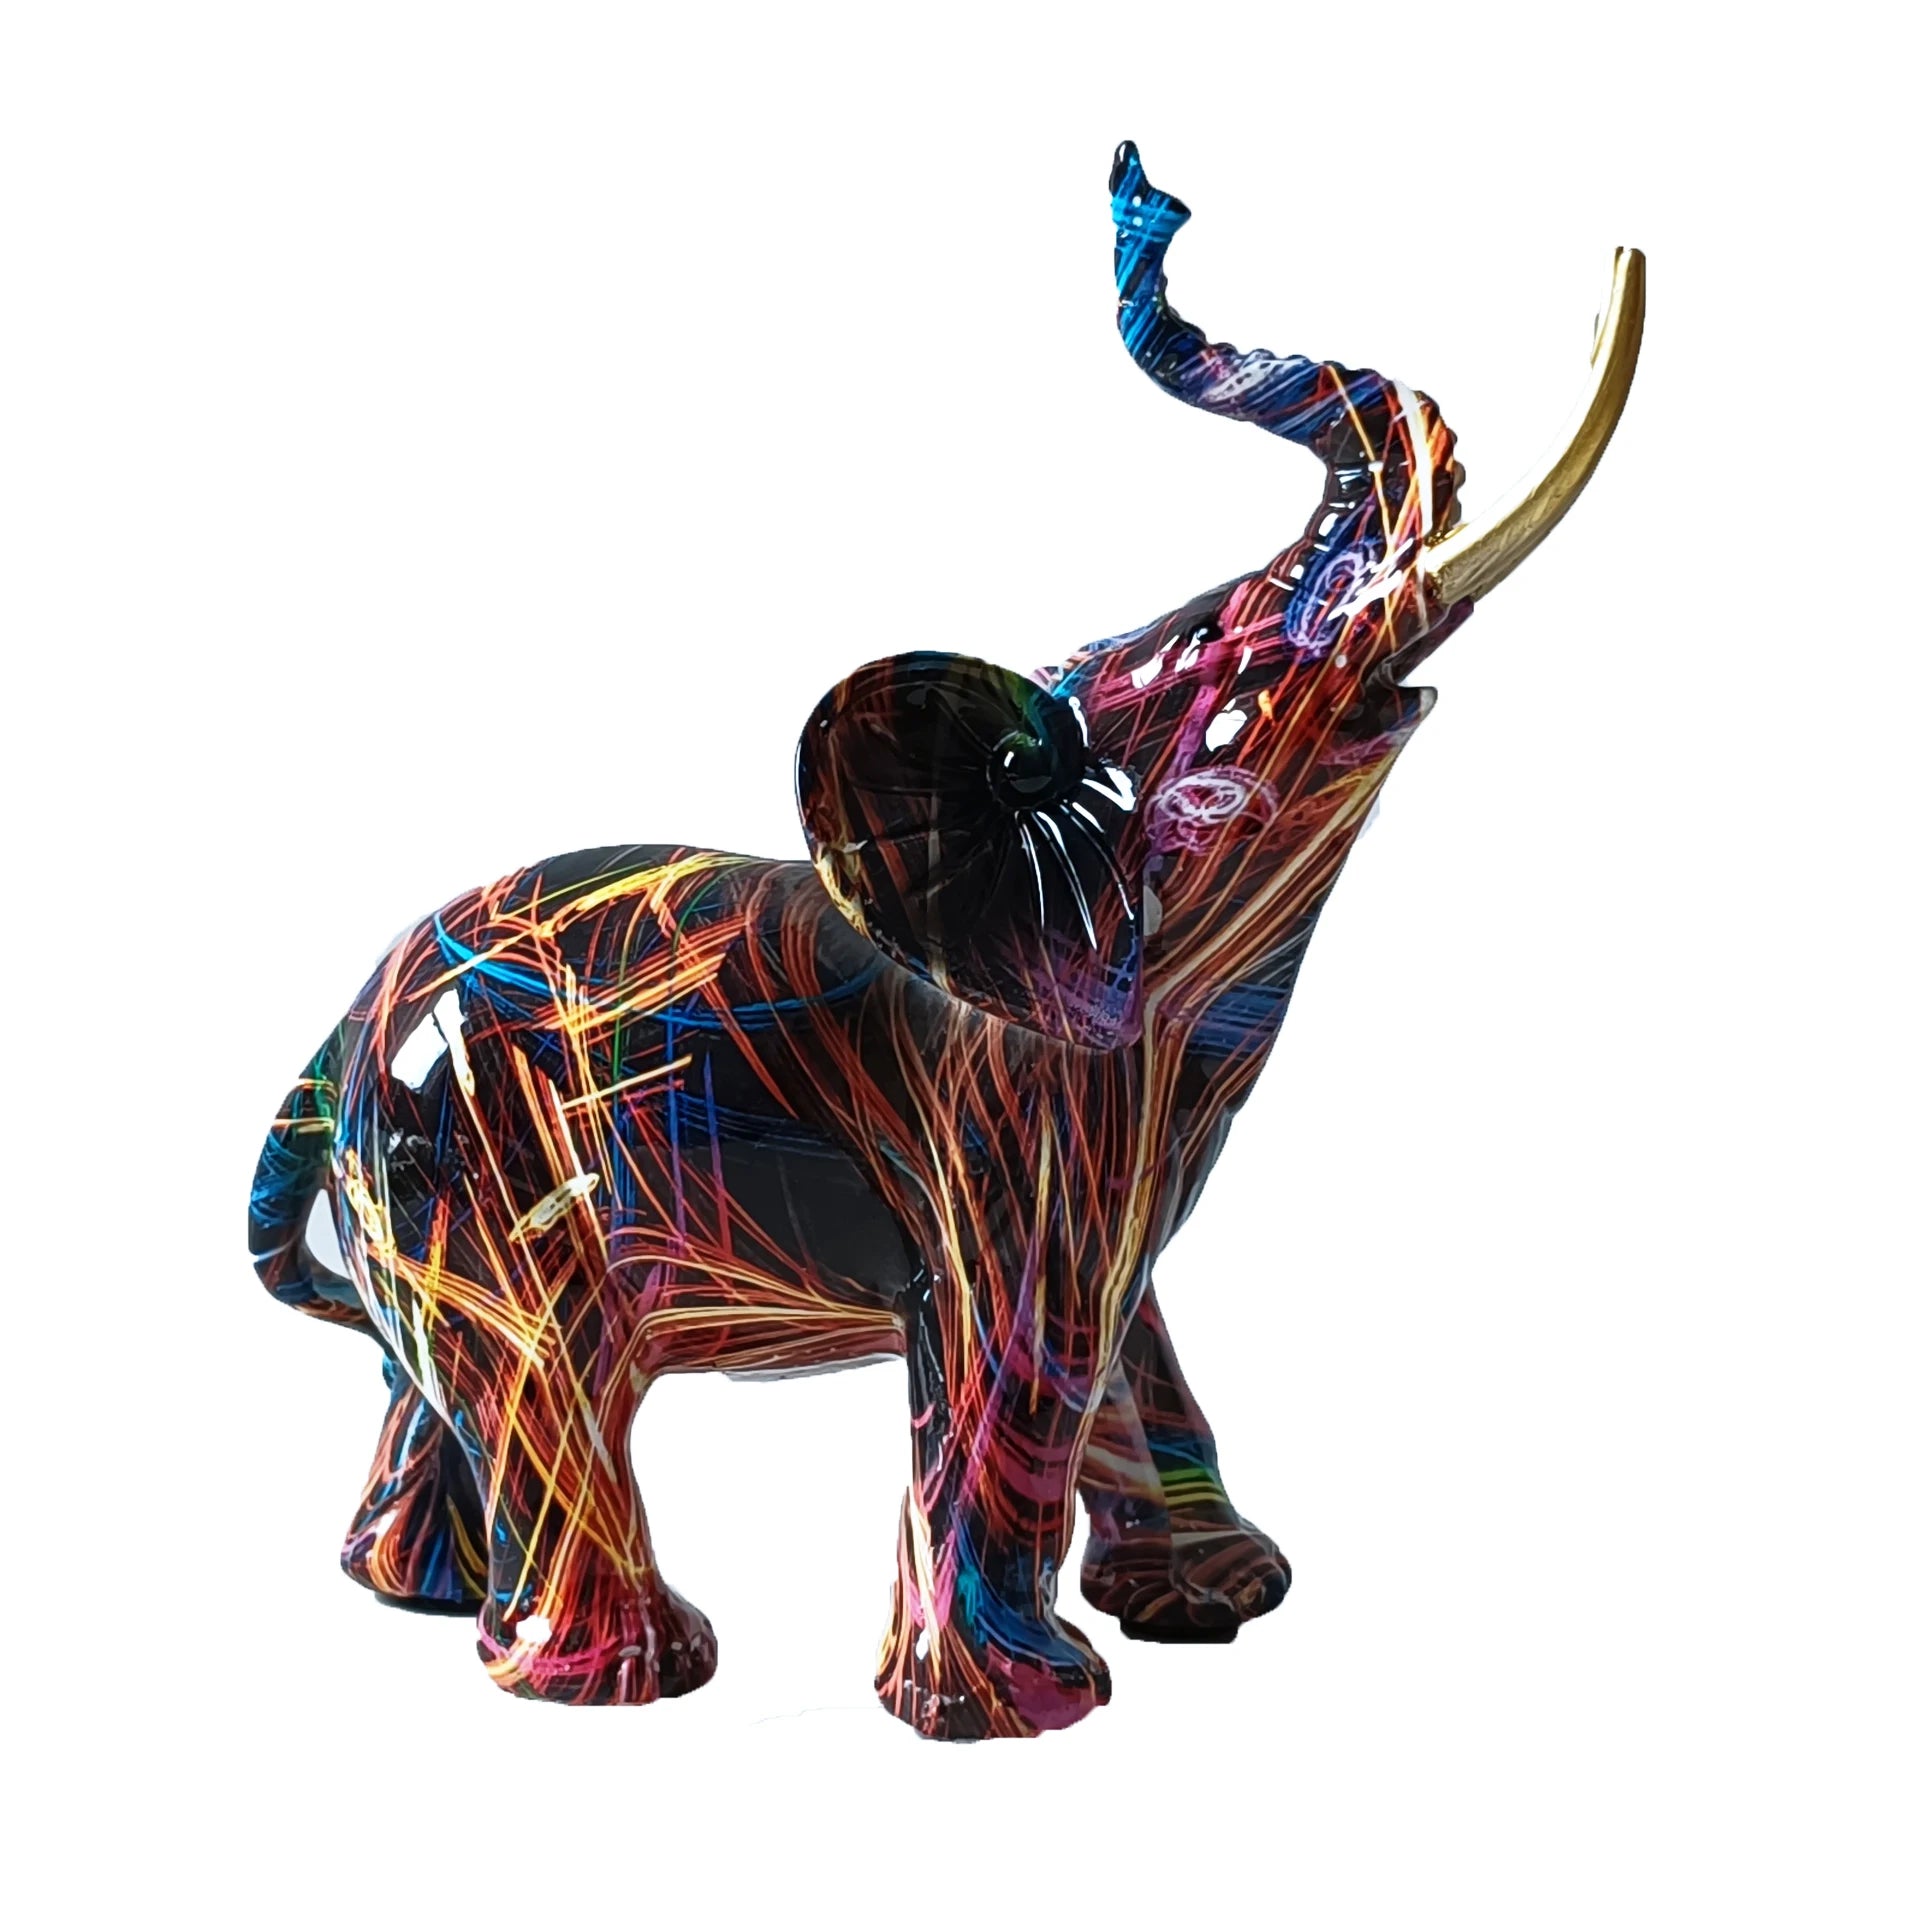 Patung dekoratif untuk patung dekorasi rumah untuk ornamen seni ruang tamu untuk dekorasi rumah meja tv kabinet gajah berwarna -warni